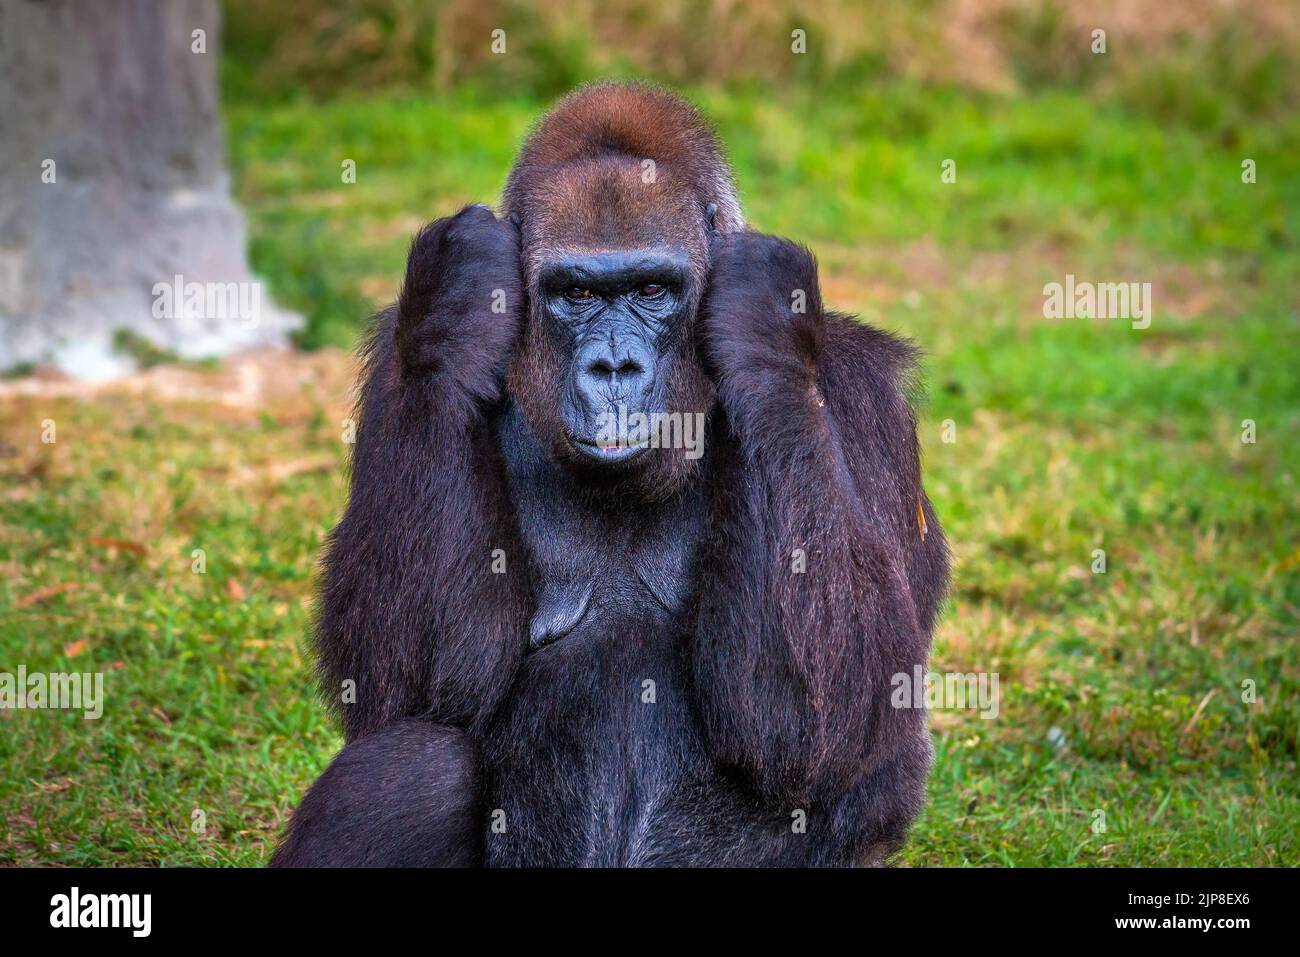 Gran gorila de tierras bajas del oeste Foto de stock